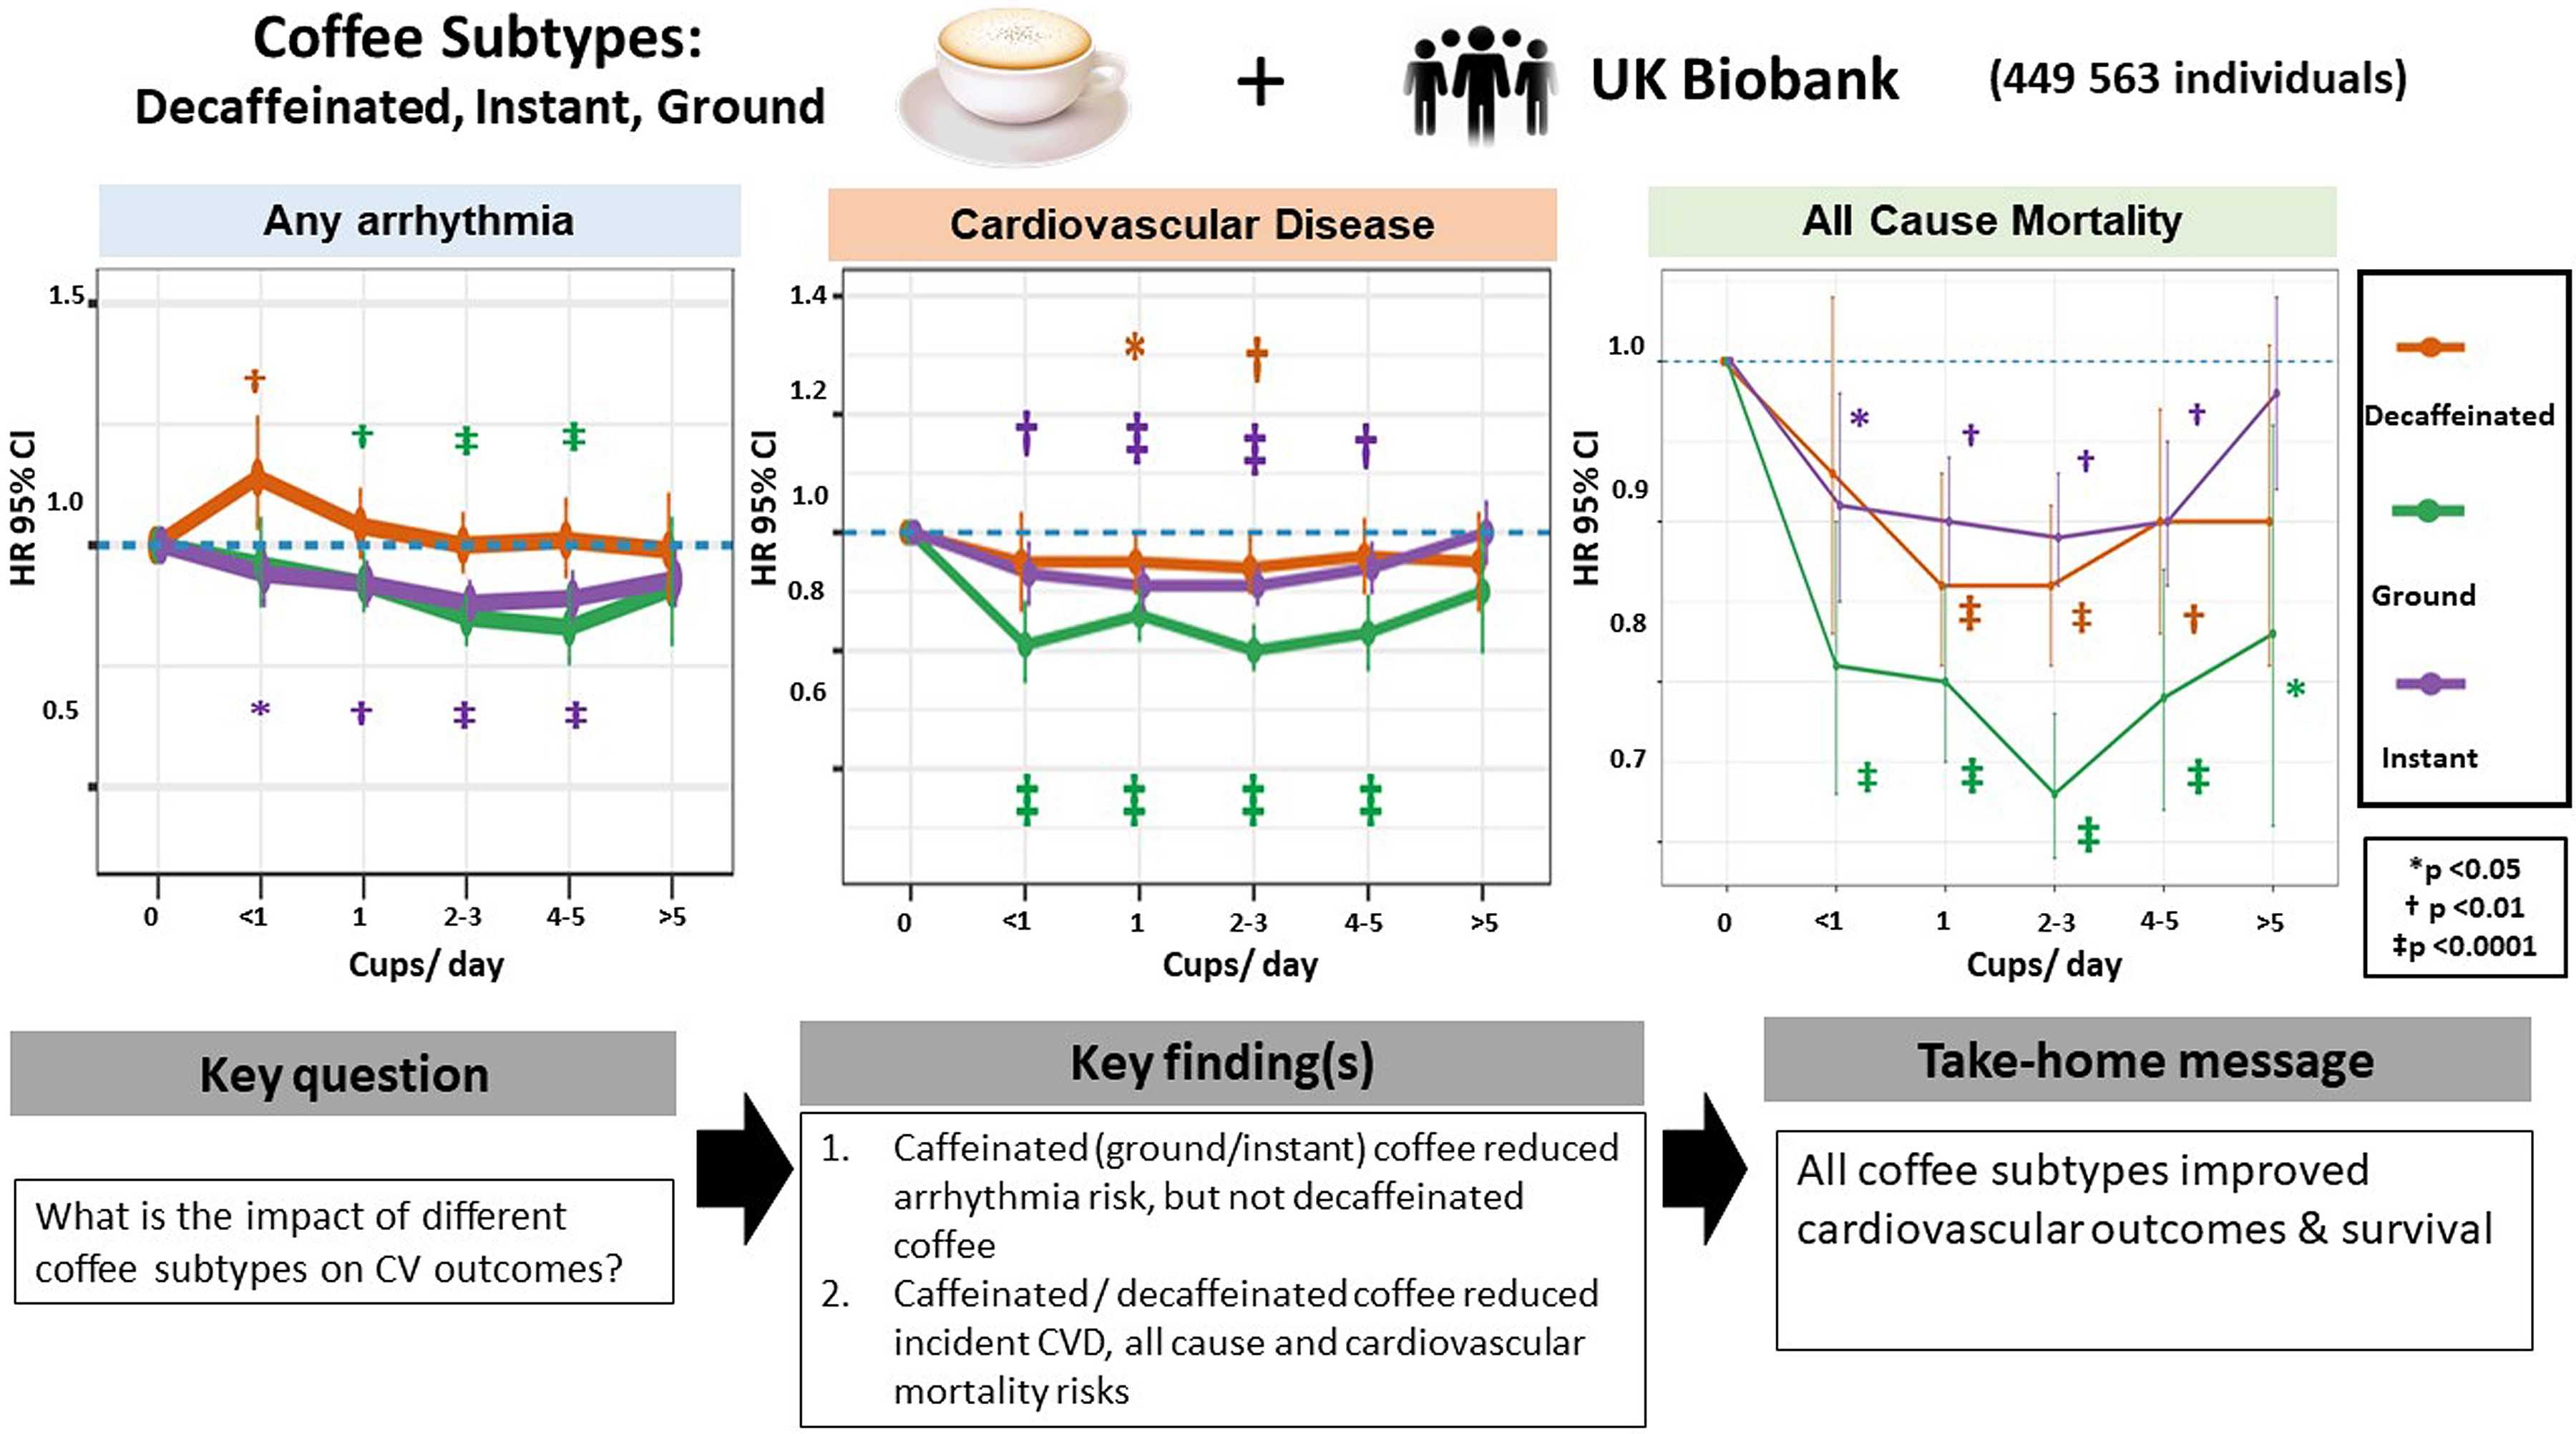 Употребление любой разновидности кофе снизило смертность от всех причин